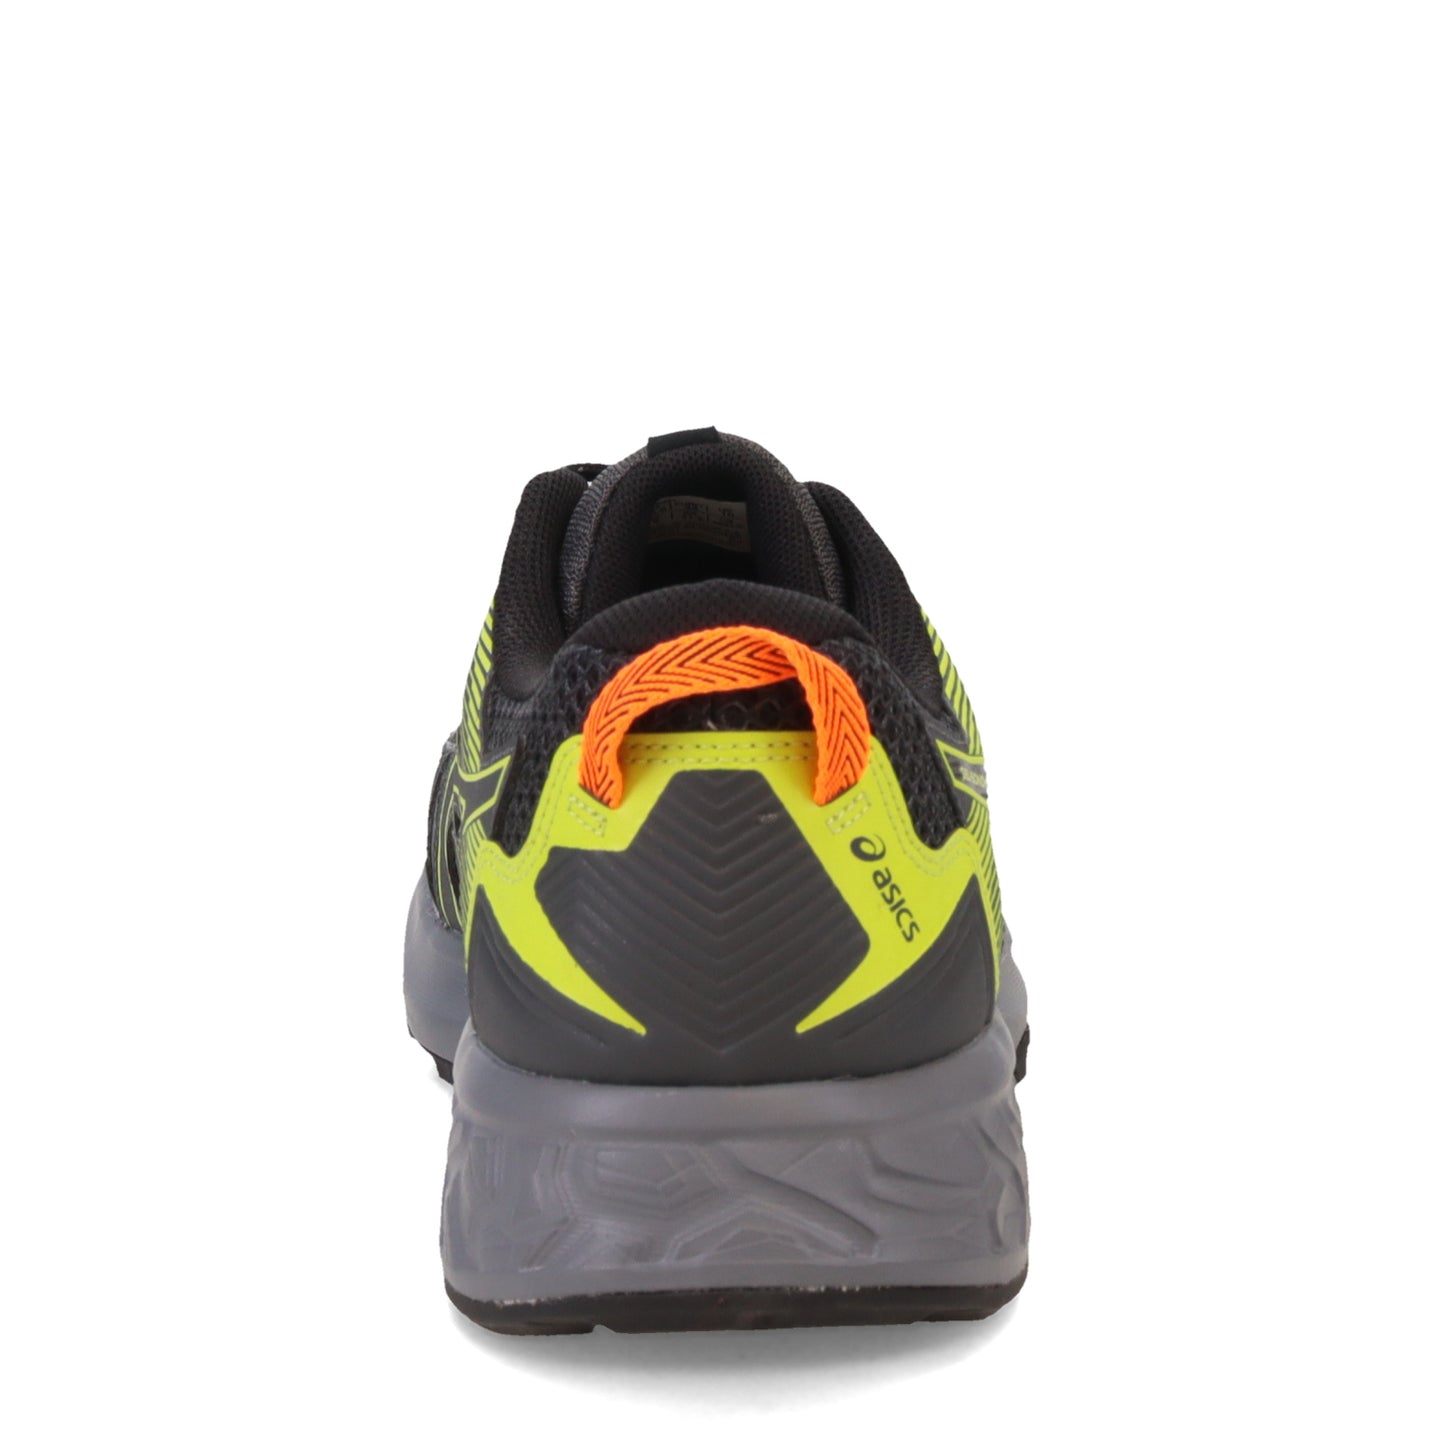 Peltz Shoes  Men's Asics GEL-Sonoma 5 Trail Running Shoe MULTICOLOR PASTEL 1011A661-021